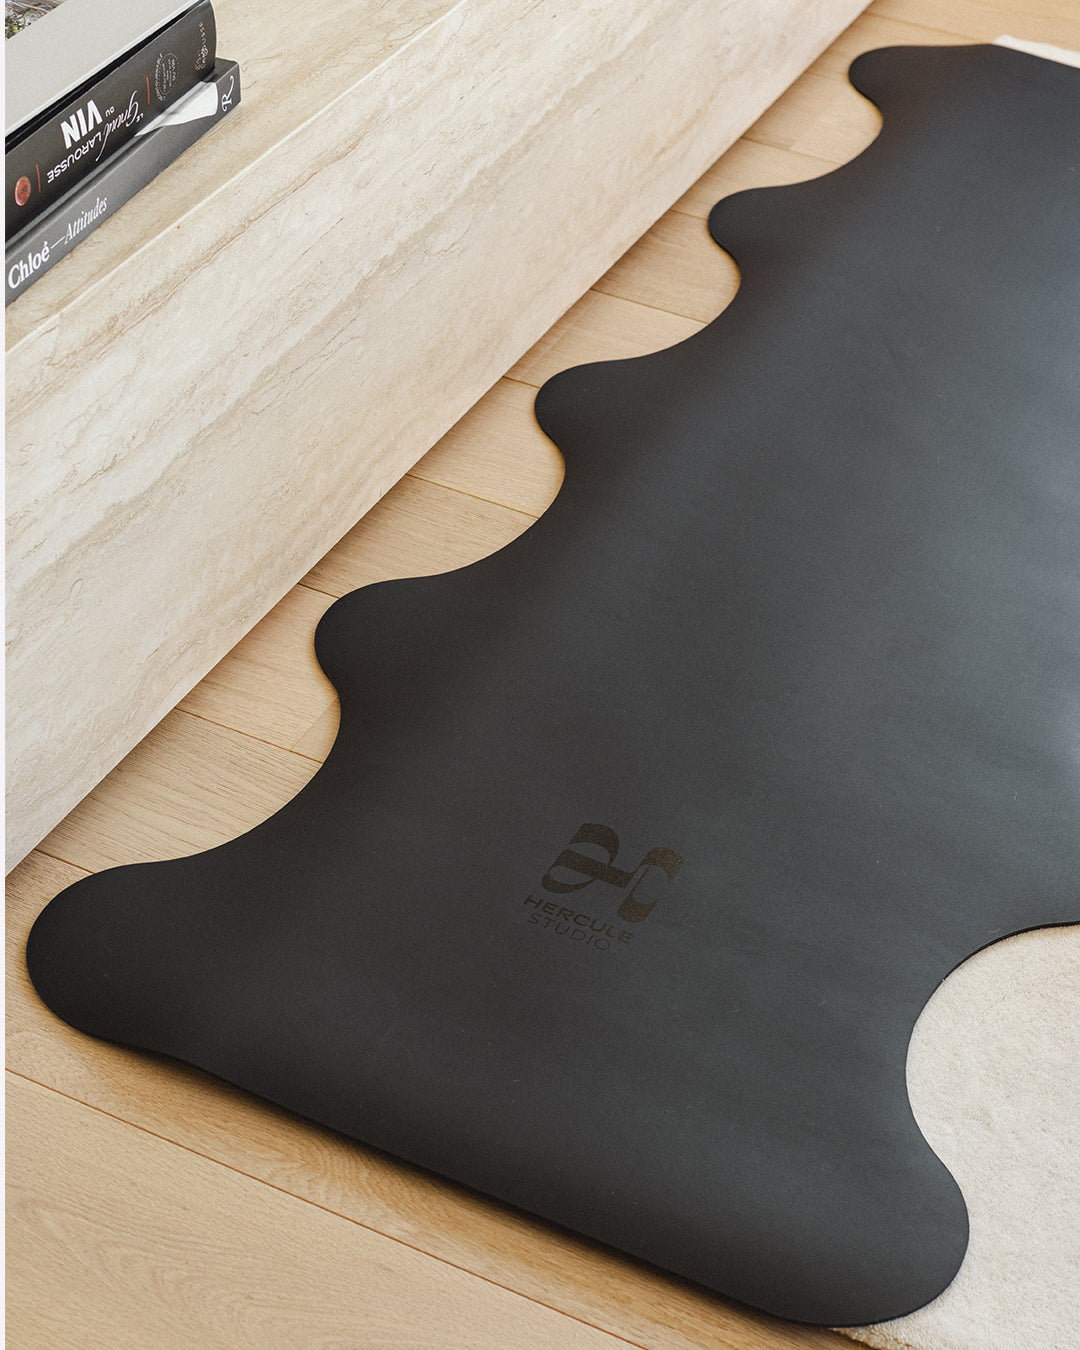 Tapis de sol pour le yoga de la marque hercule studio modèle mar couleur outrenoir photo lifestyle zoom vague